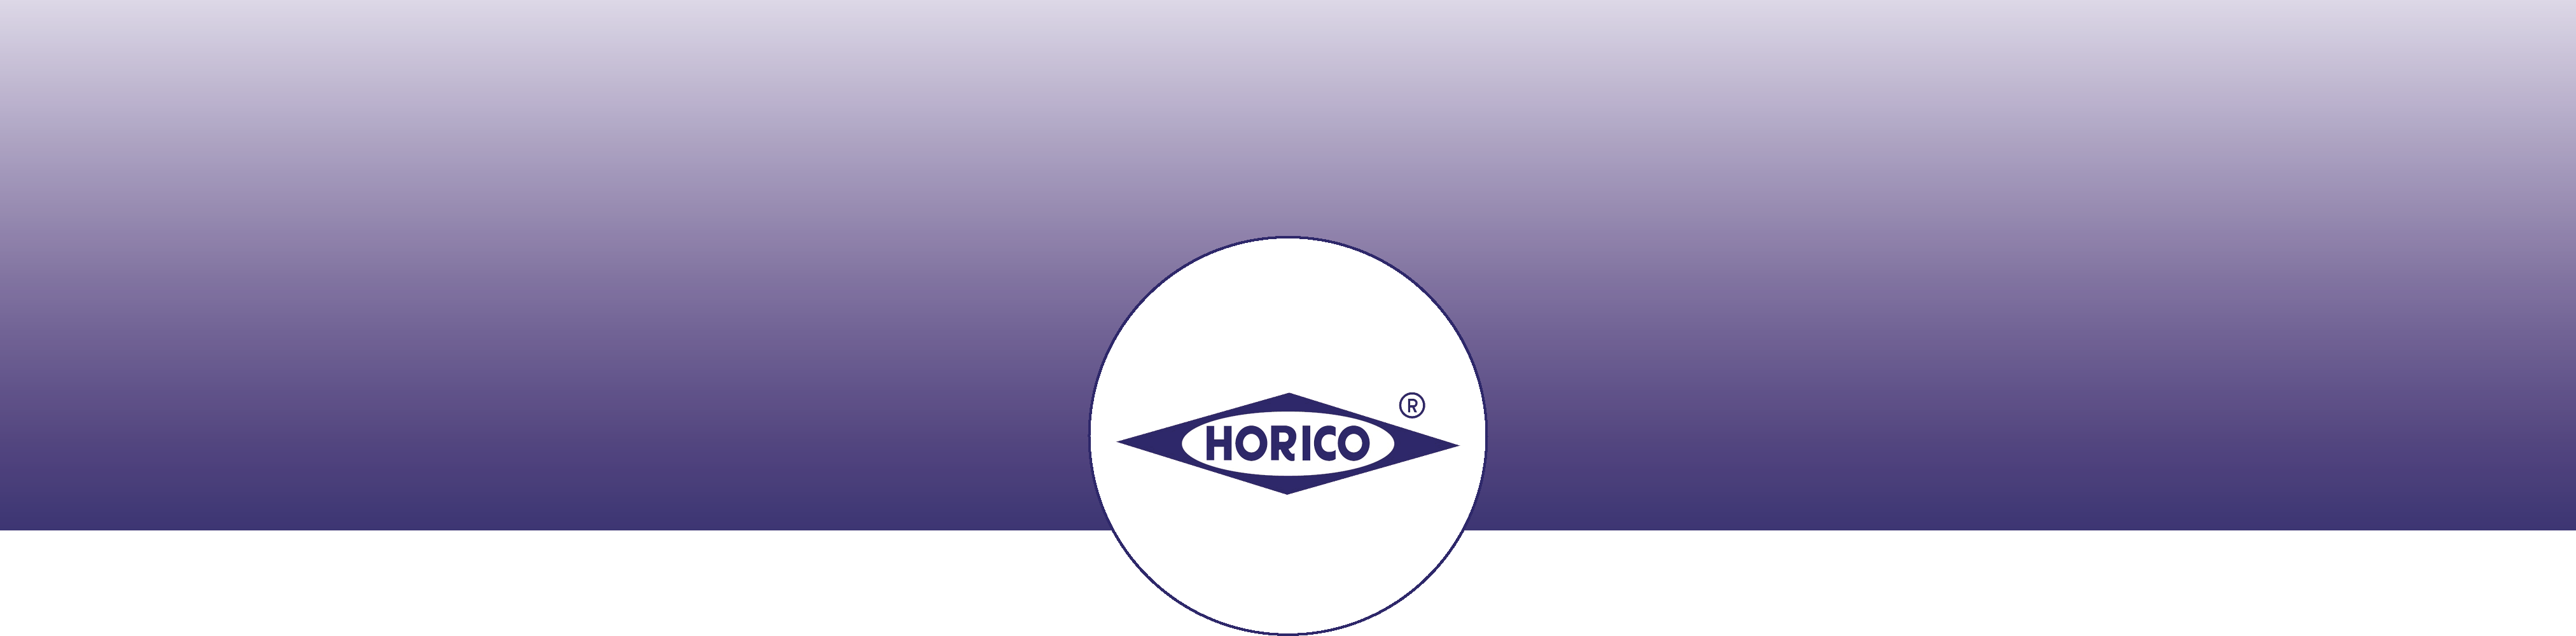 banner_horico